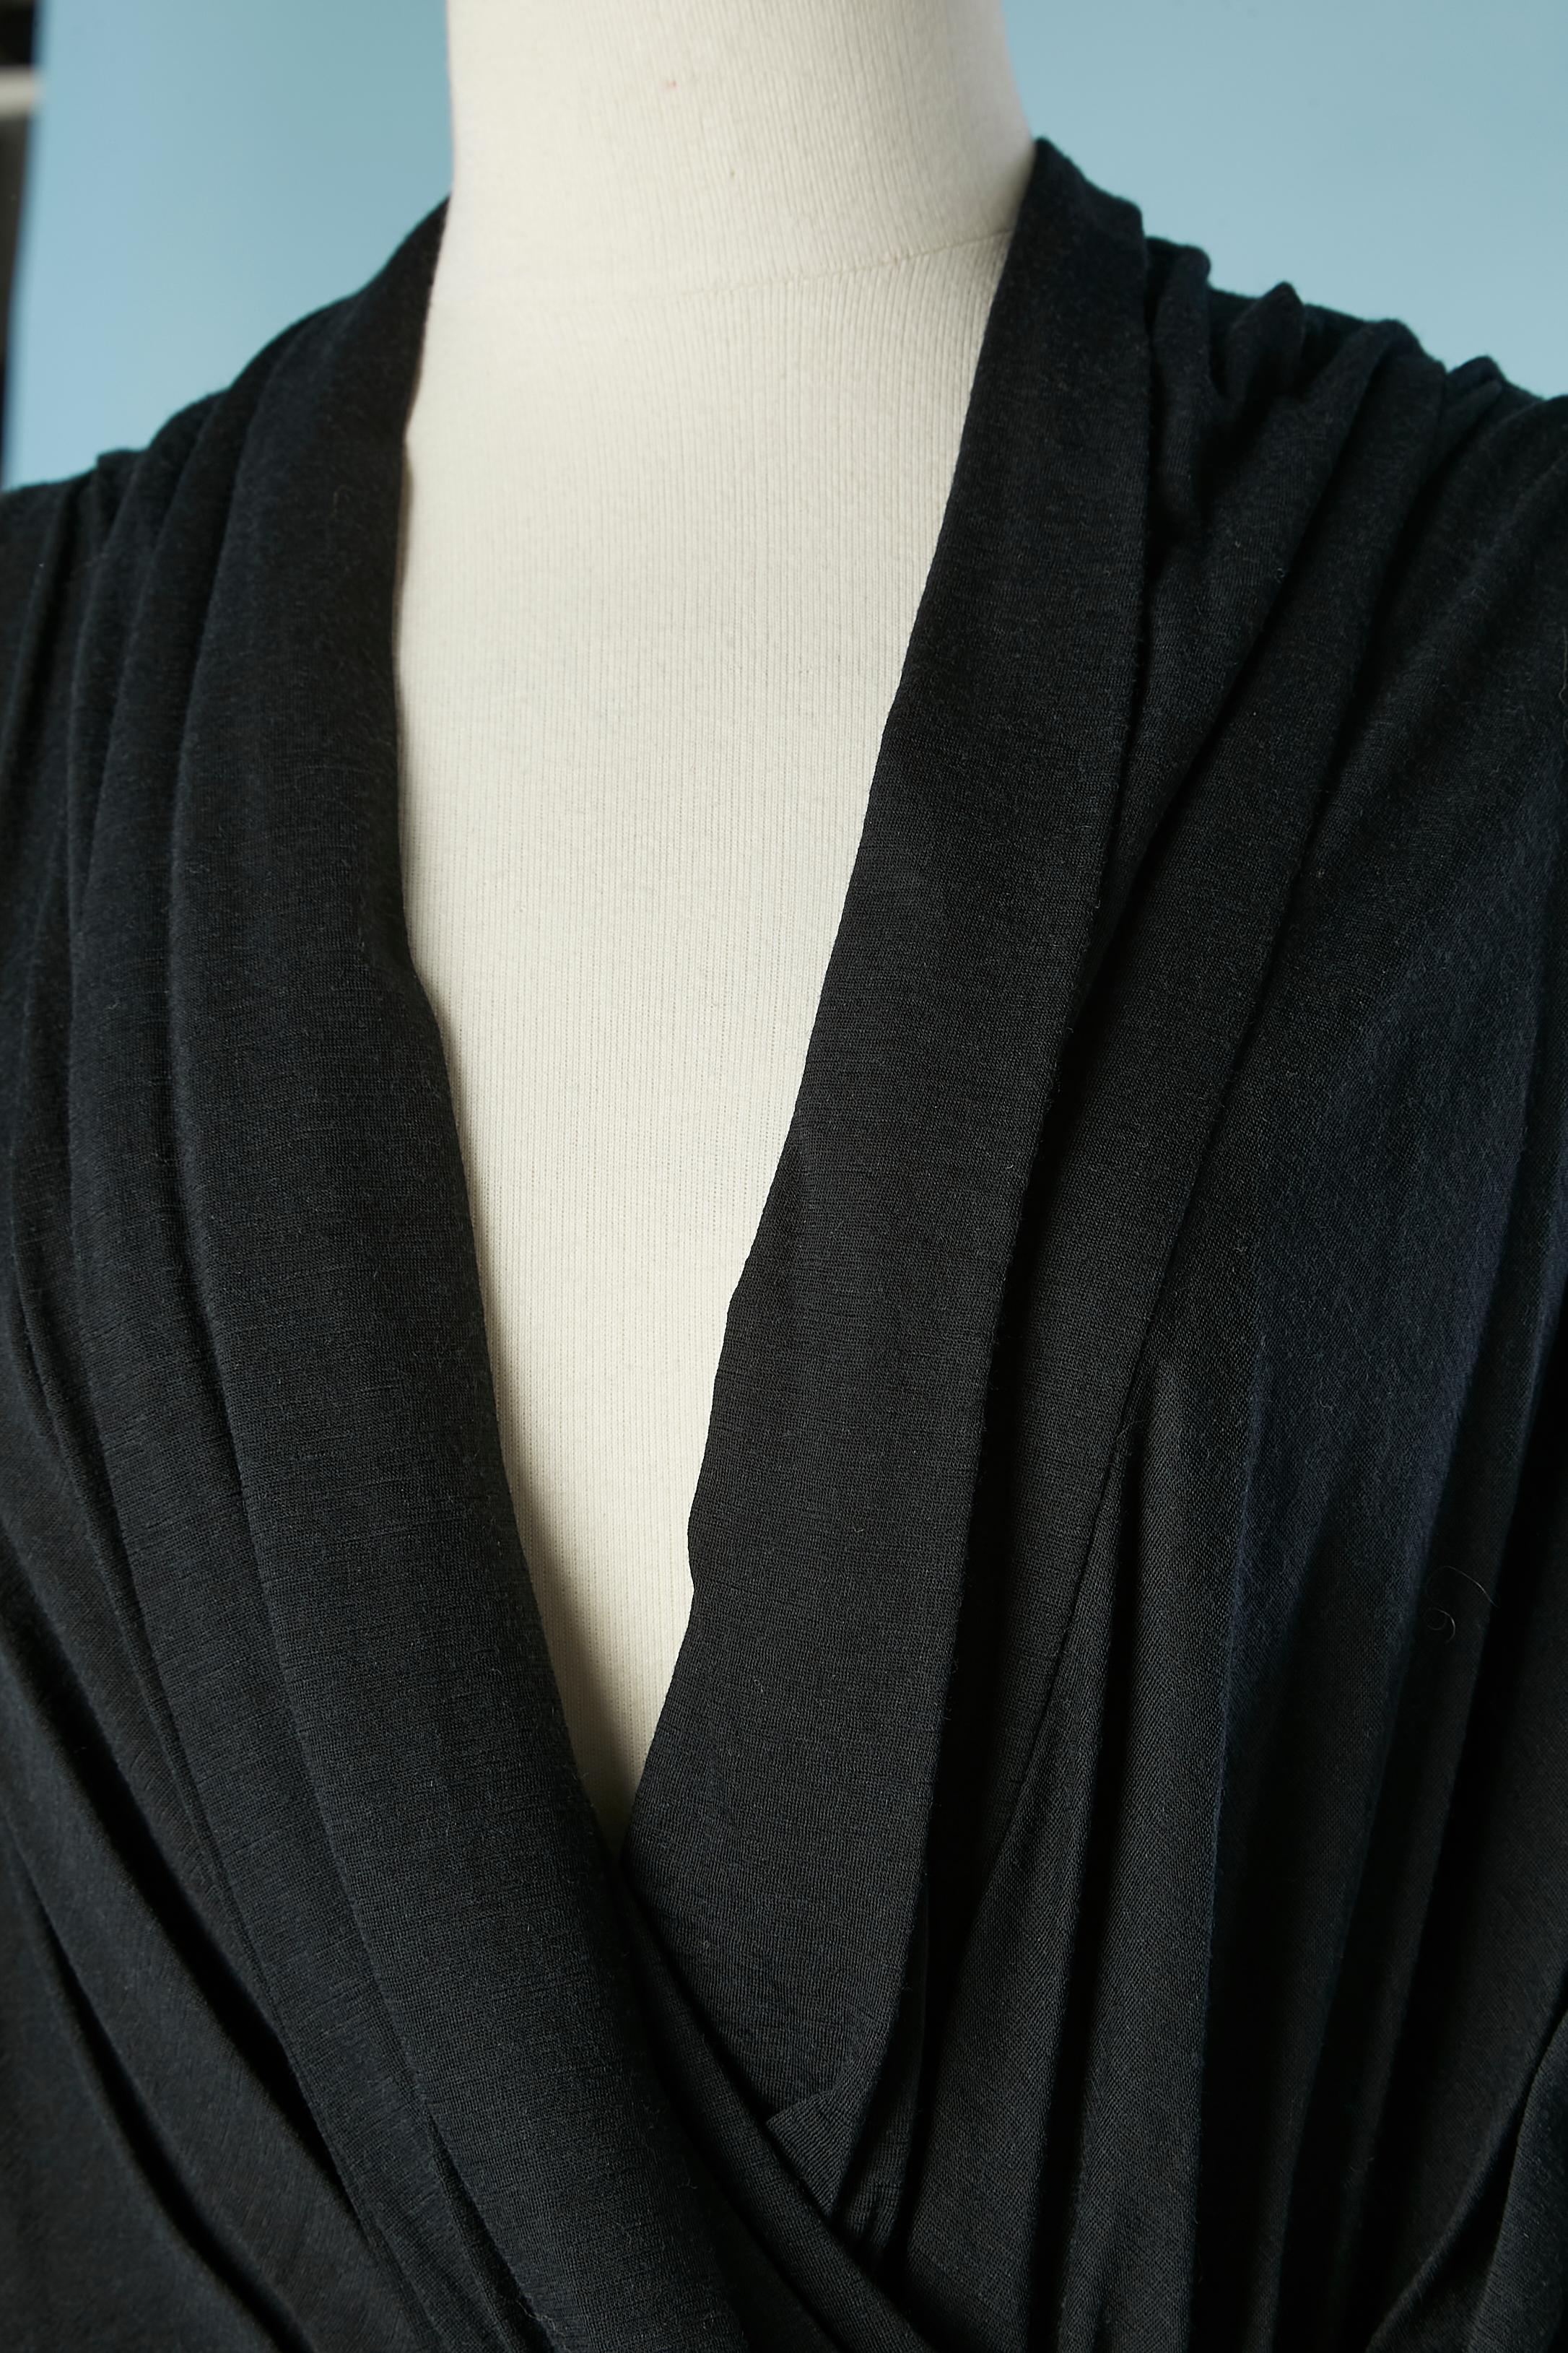 Kleid aus drapiertem Woll-Jersey  mit Gummizug in der Taille und elastischem Rand an den Ärmeln. Rillen aus Rayon auf der Innenseite des Kleides an den Schultern, sichtbarer Reißverschluss in der hinteren Mitte. 
GRÖSSE 40 (Fr) 10 (Us) 